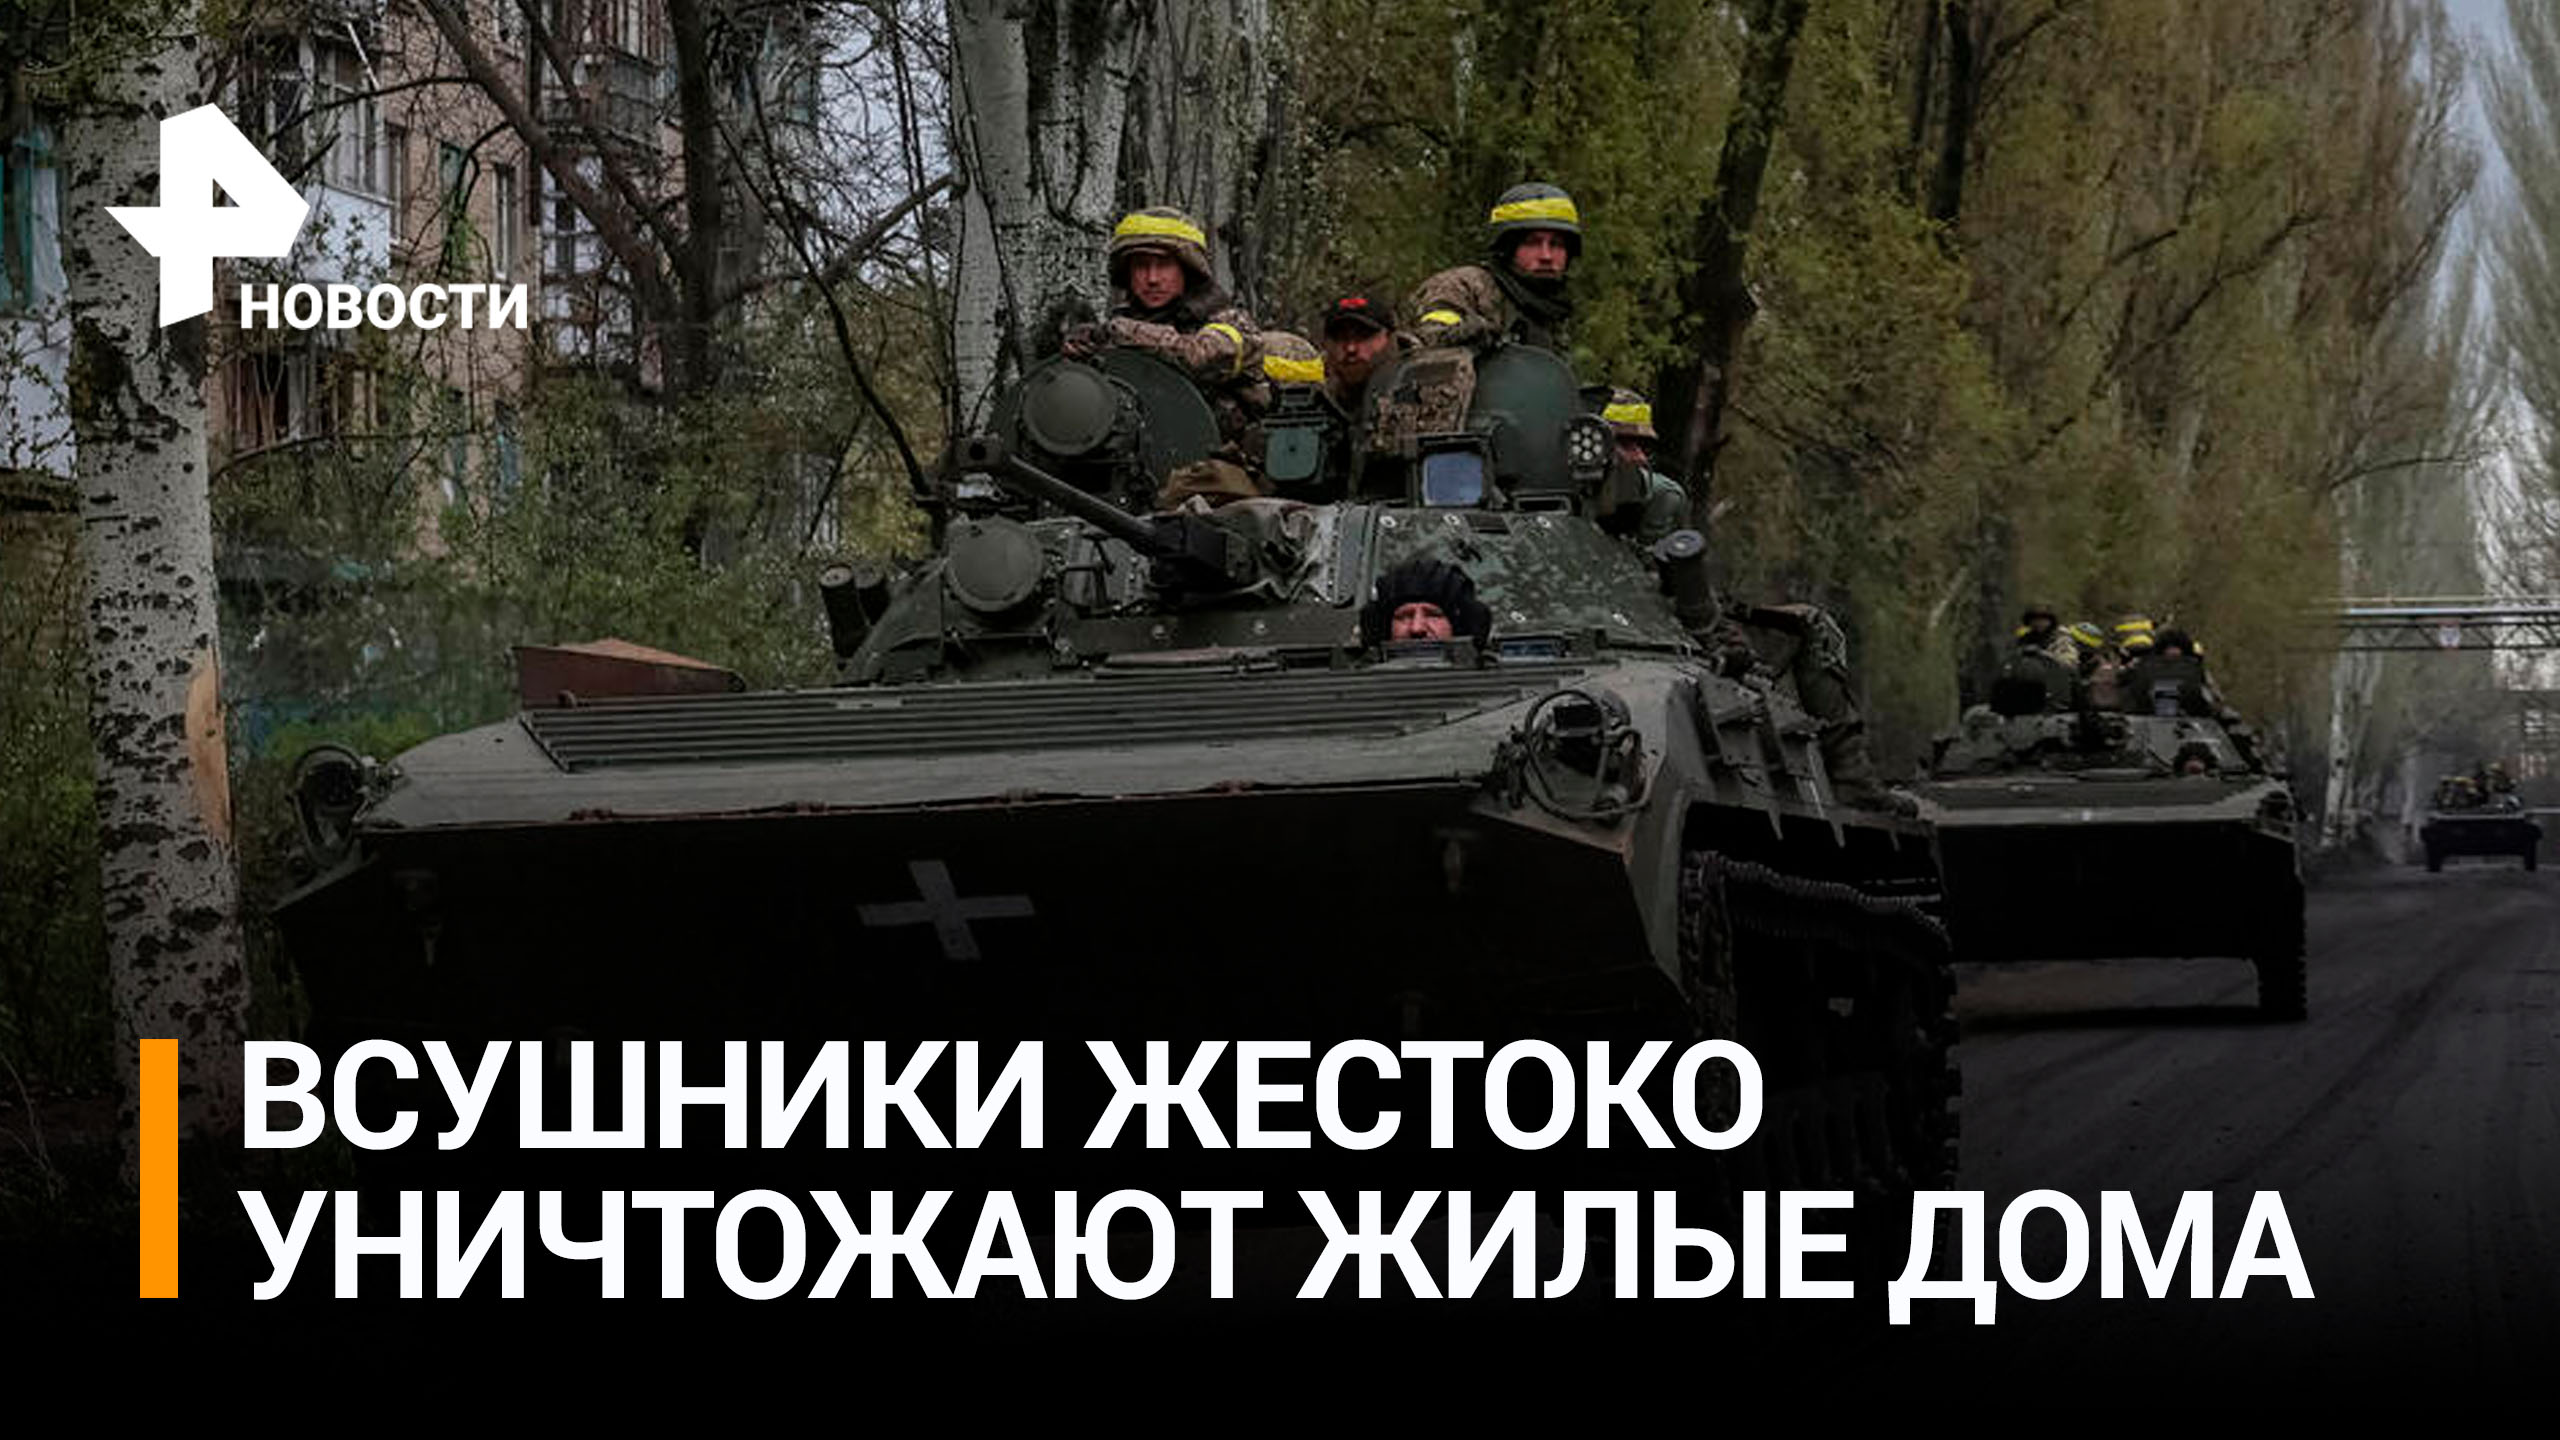 Очевидец рассказал, как ВСУ обстреляли из танка дом в Артемовске / РЕН Новости